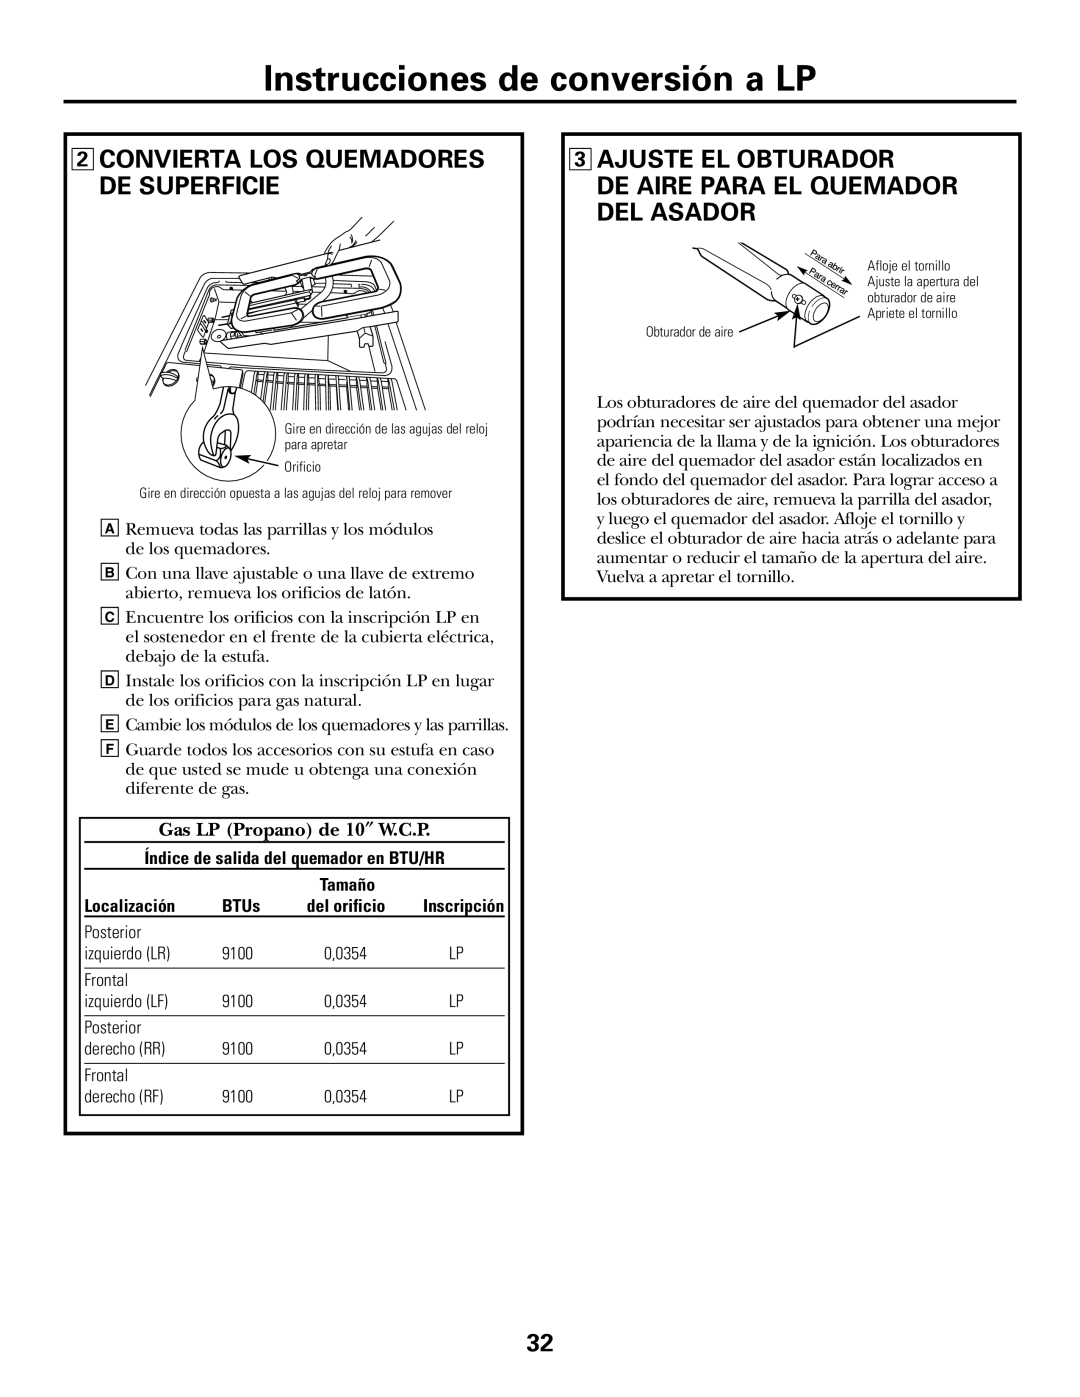 GE JGP990 Instrucciones de conversión a LP, 2CONVIERTA LOS QUEMADORES DE SUPERFICIE, 3AJUSTE EL OBTURADOR, Localización 